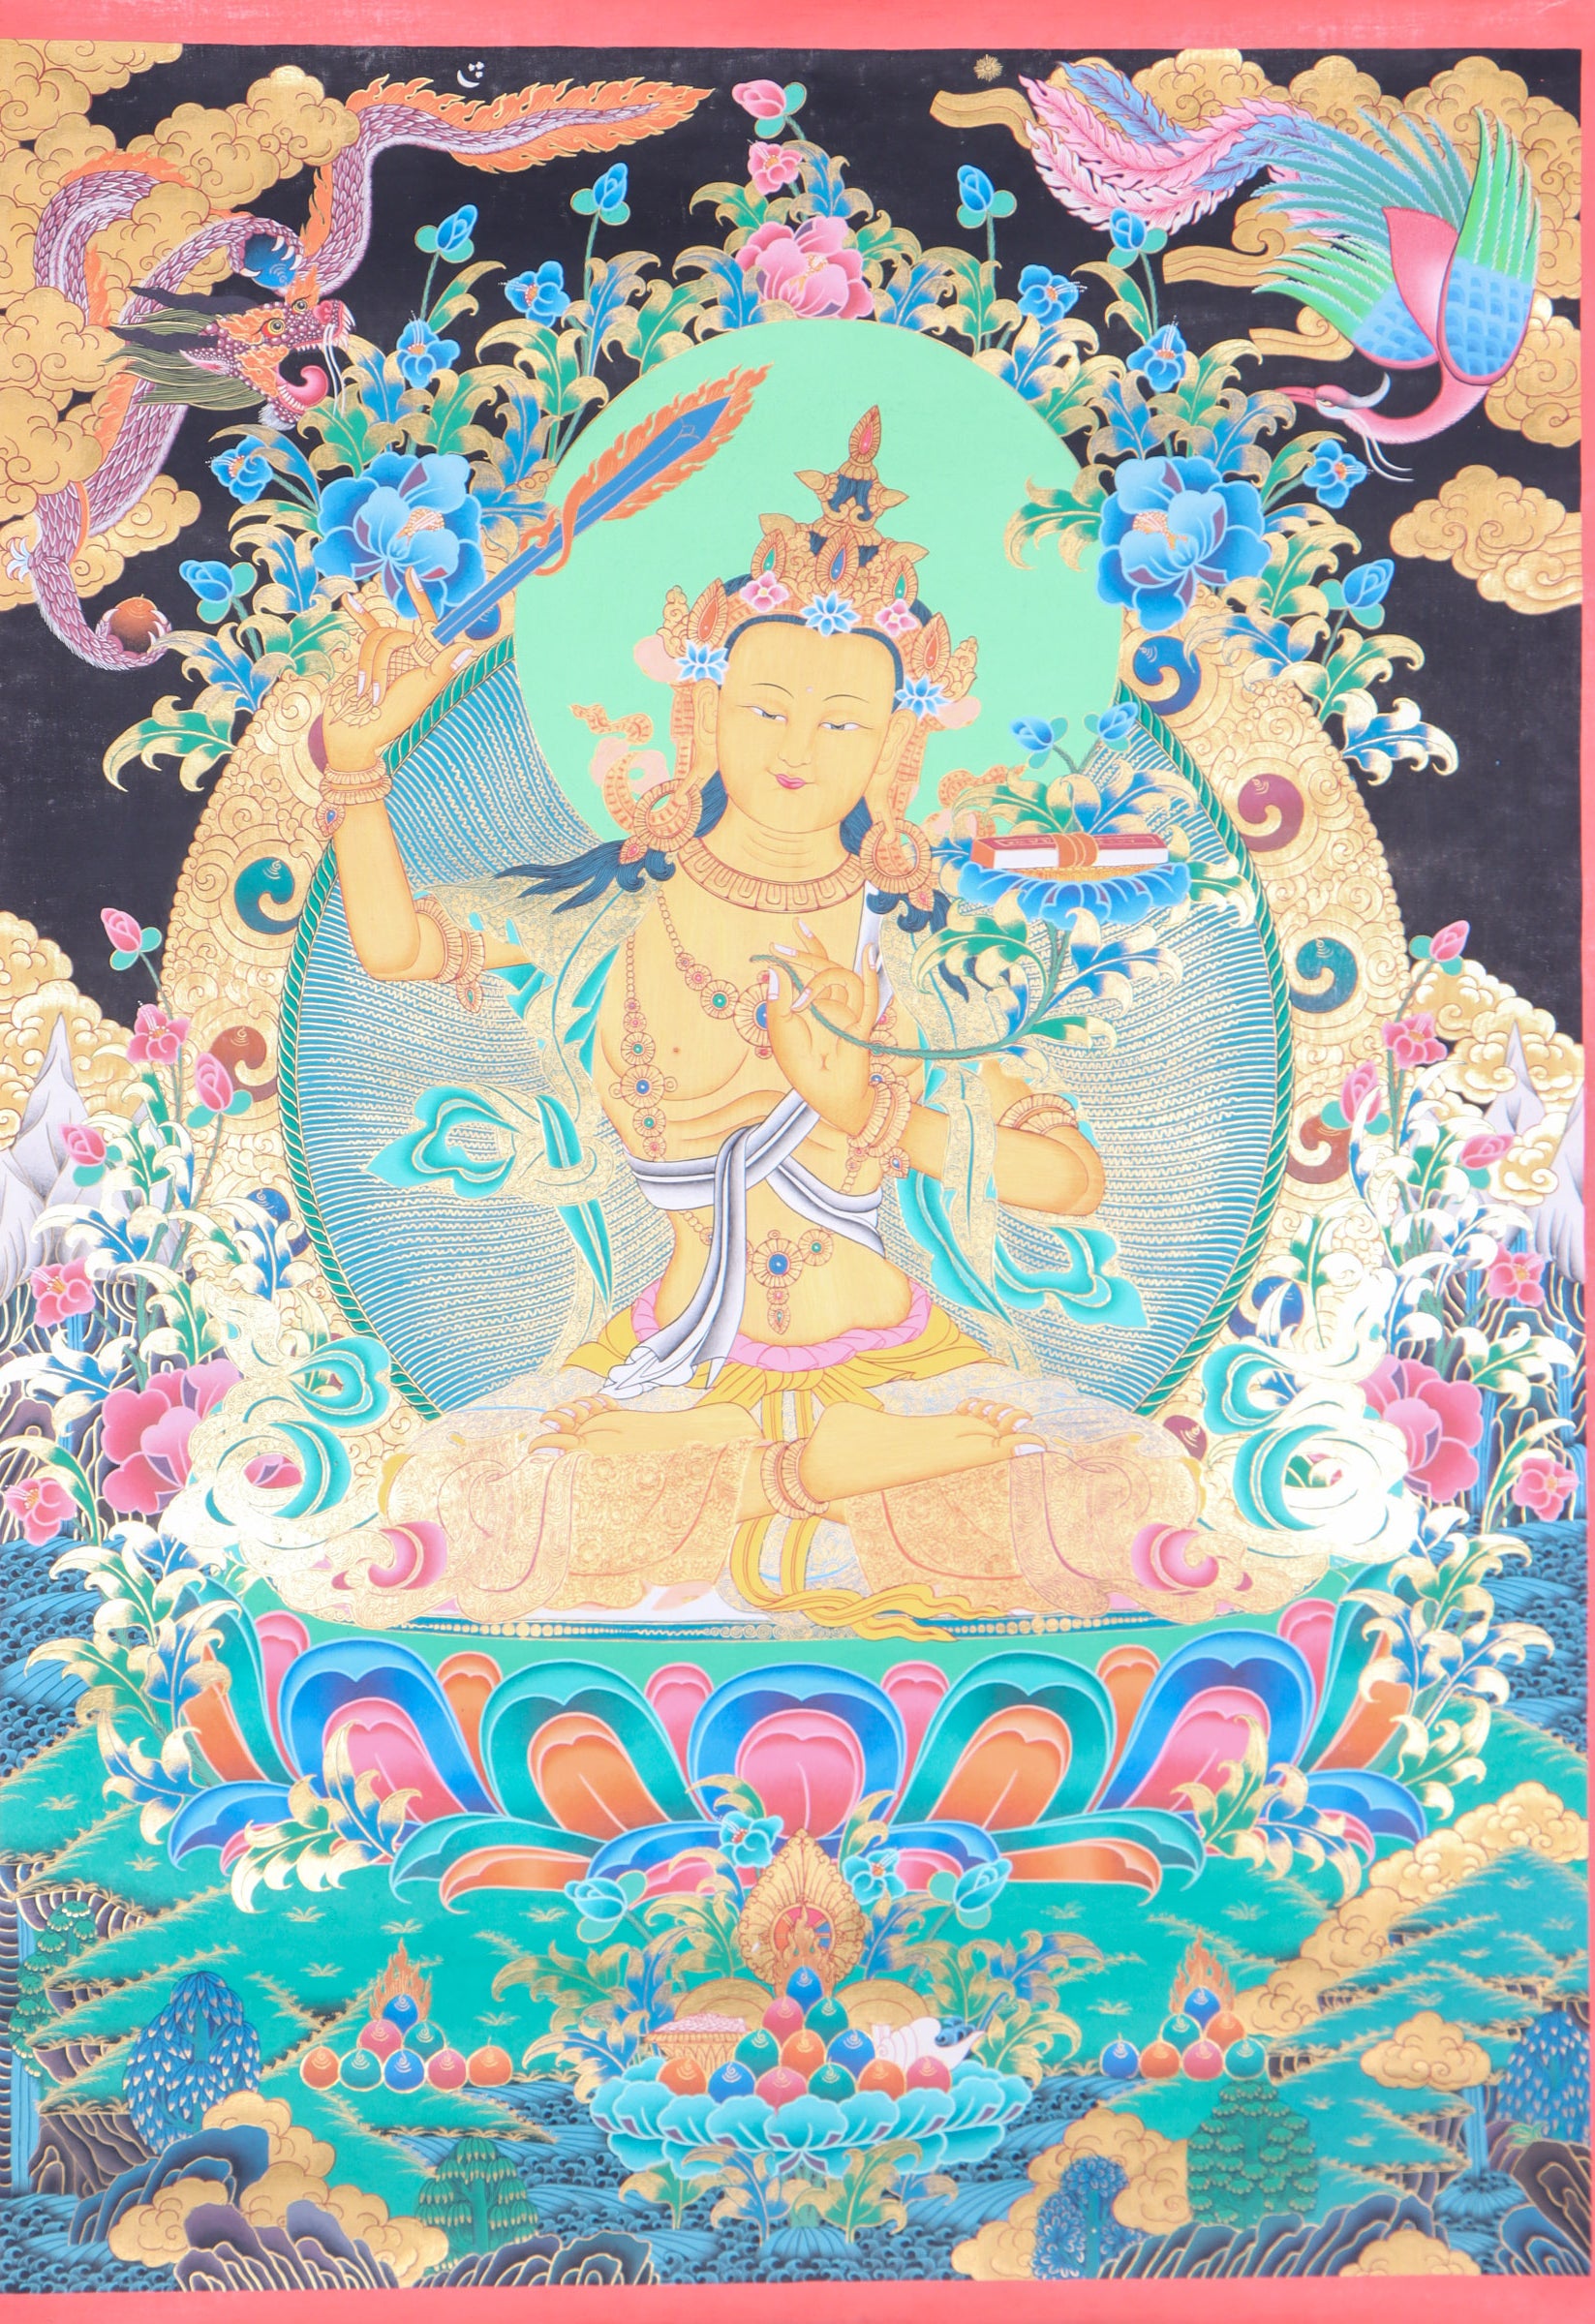 Manjushri Thangka Painting for wisdom and enlightment.